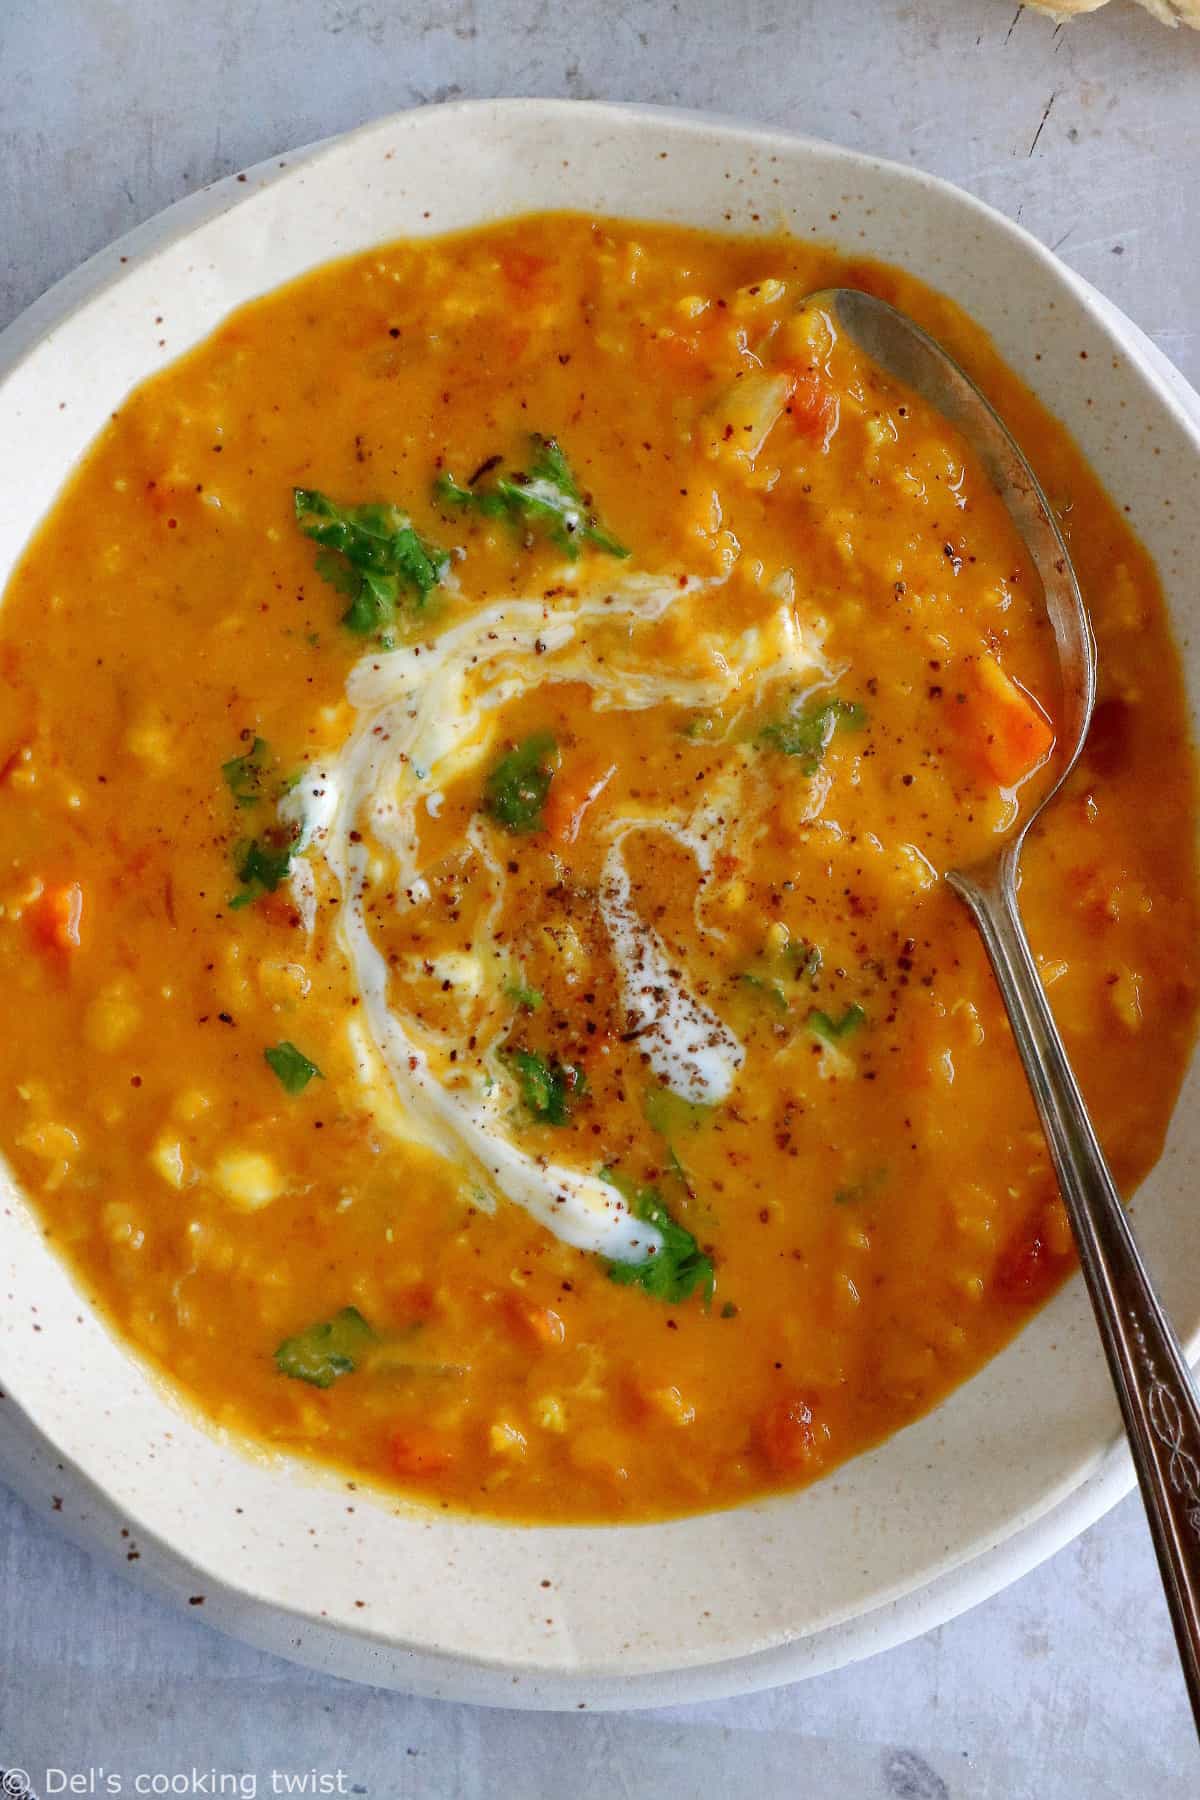 Plongez dans les saveurs douces et réconfortantes de cette soupe de pois cassés et lentilles corail au curry.